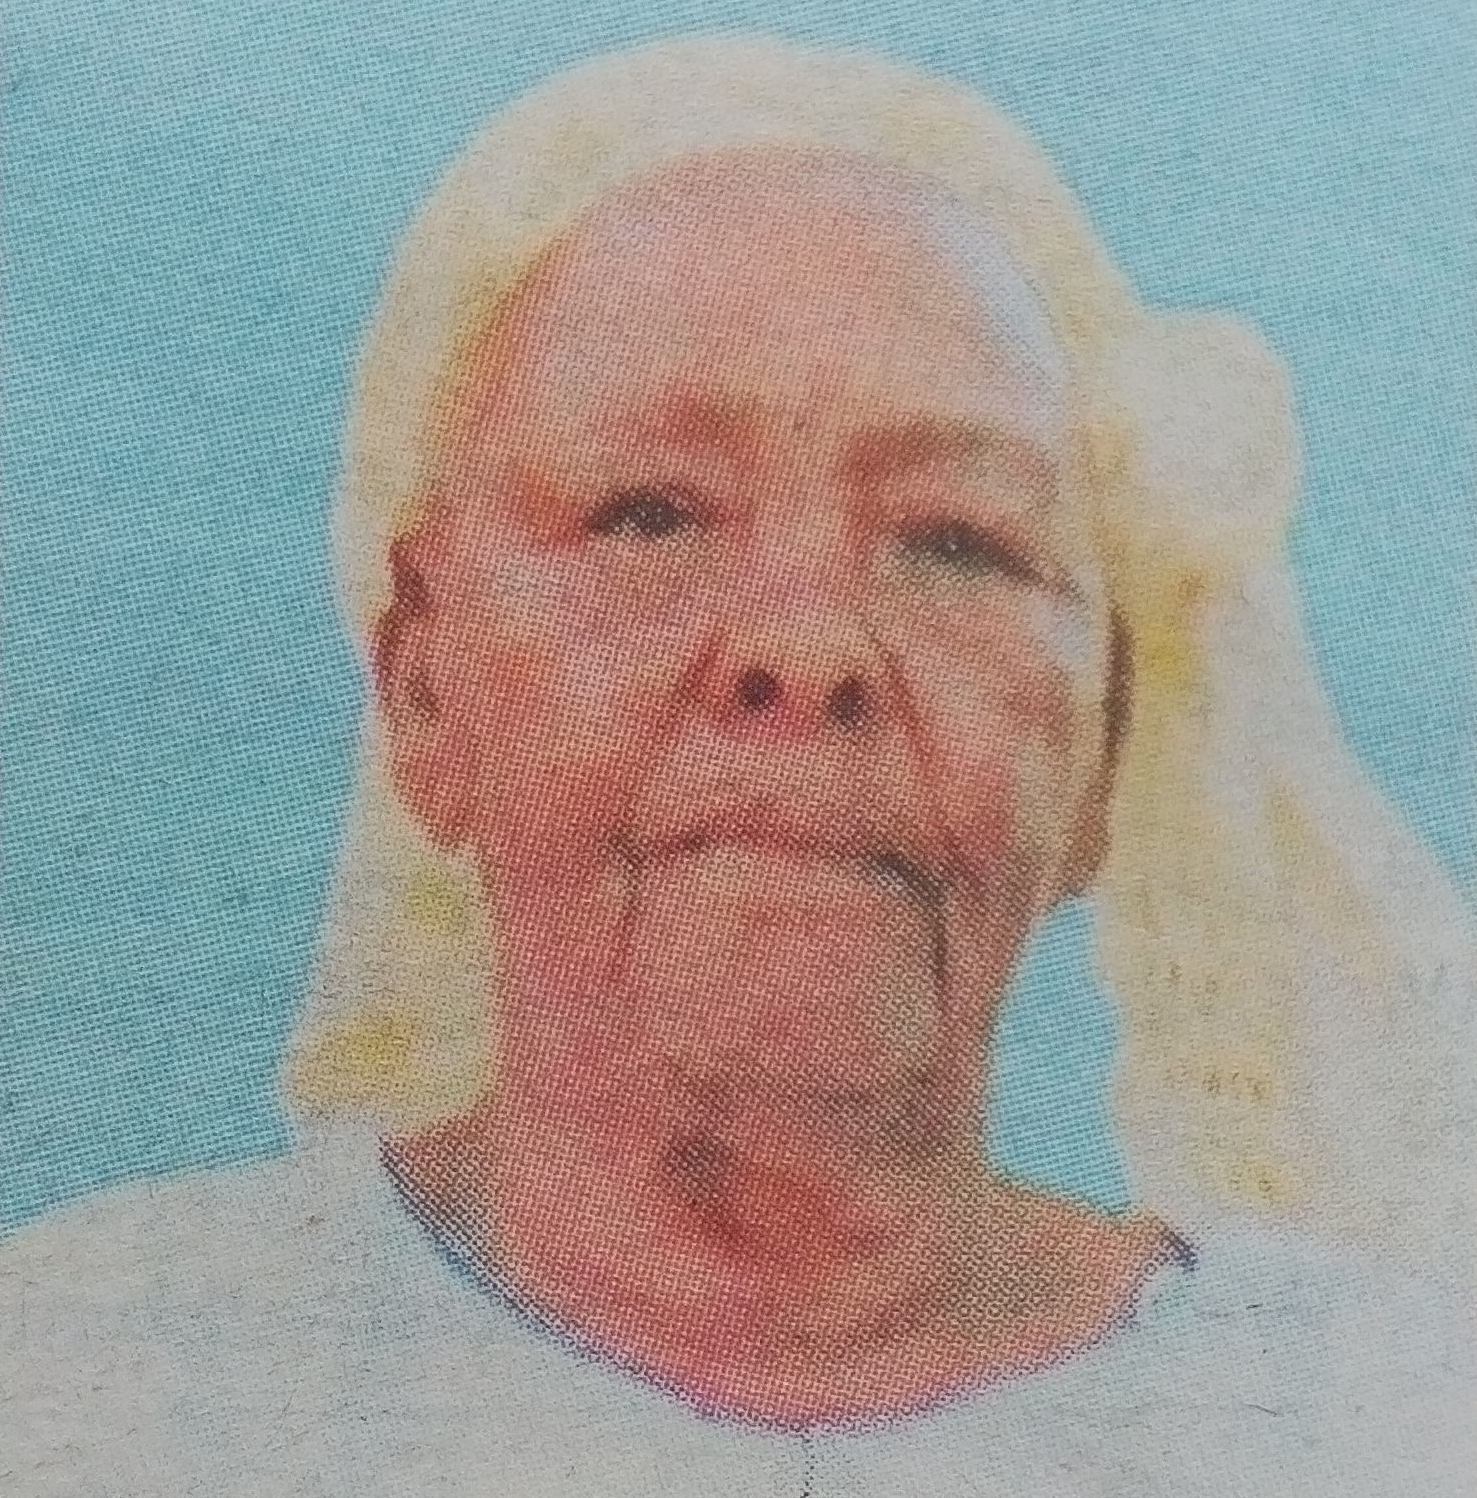 Obituary Image of Mwaitu Lydia Nana Ndavi